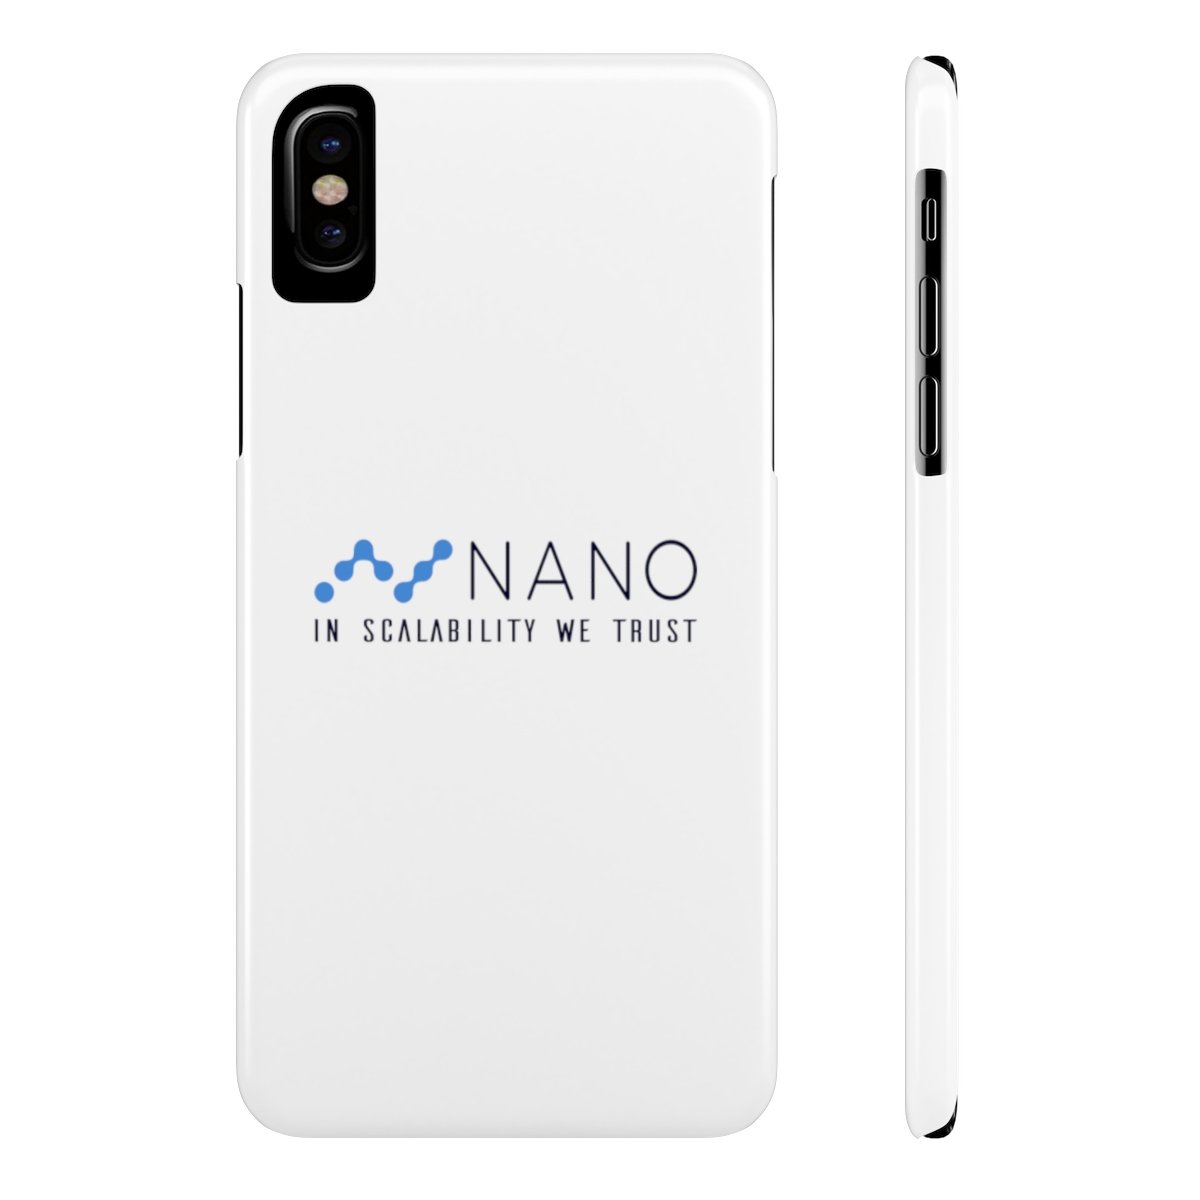 Nano, ở khả năng mở rộng mà chúng tôi tin tưởng - Case Mate Slim Phone Case TCP1607 iPhone X Slim Official Crypto Merch